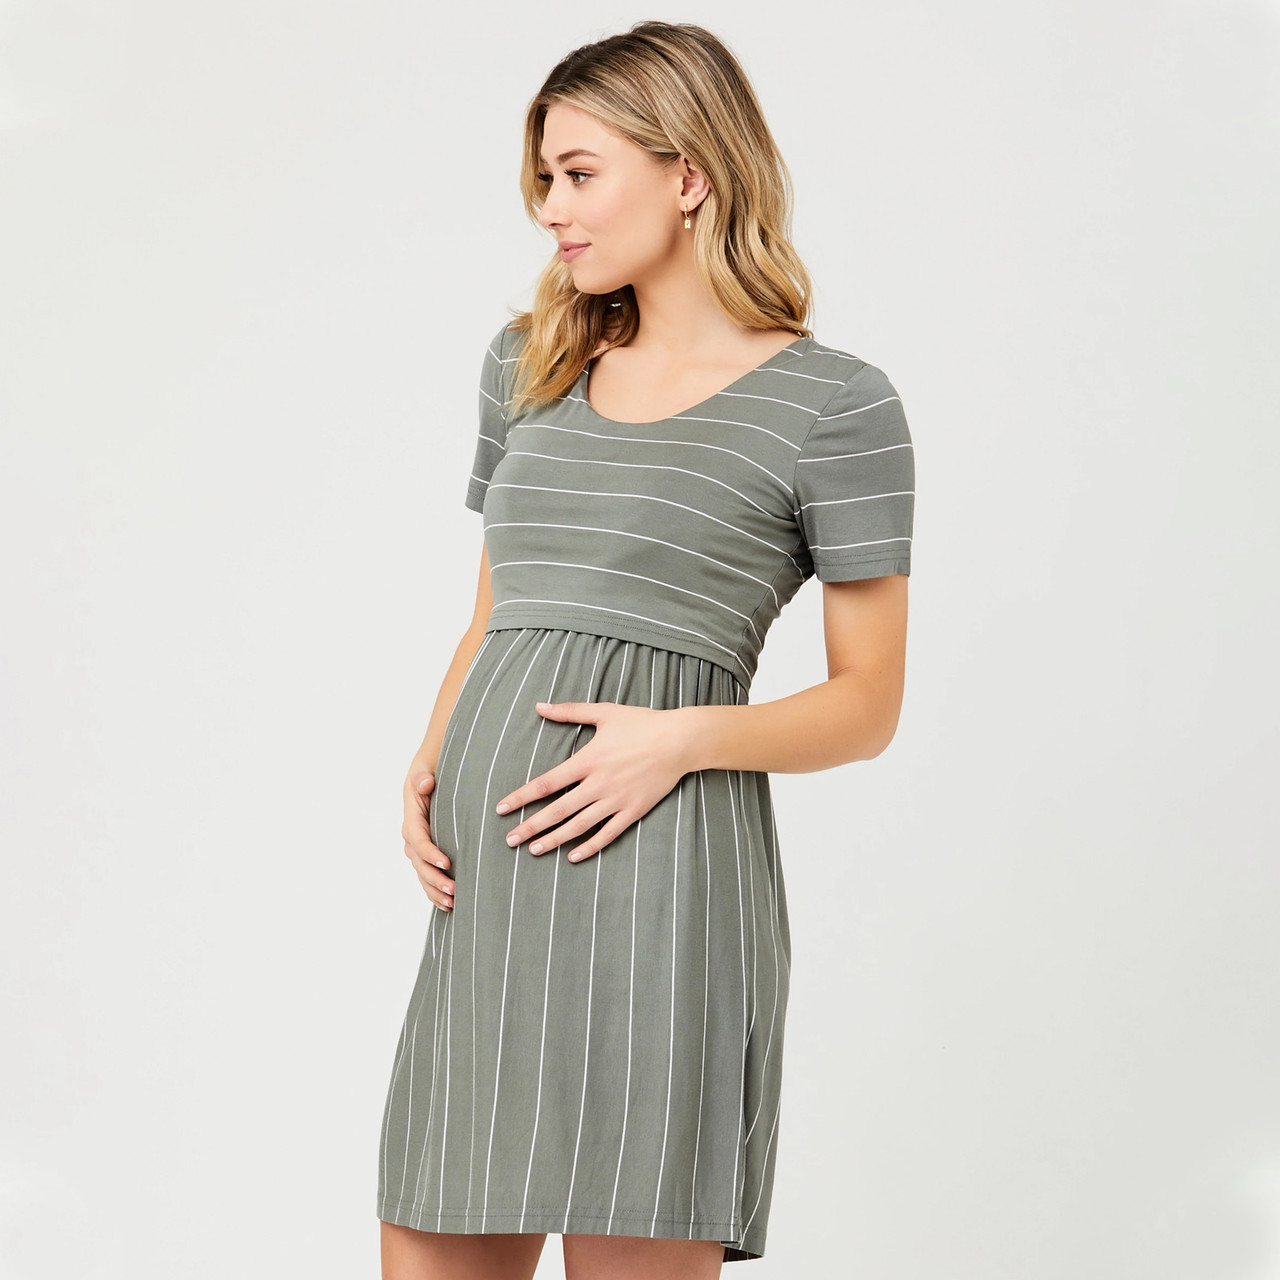 Olive Ripe Maternity Stripe Crop Top Nursing Dress. Buy Pregnancy Wear